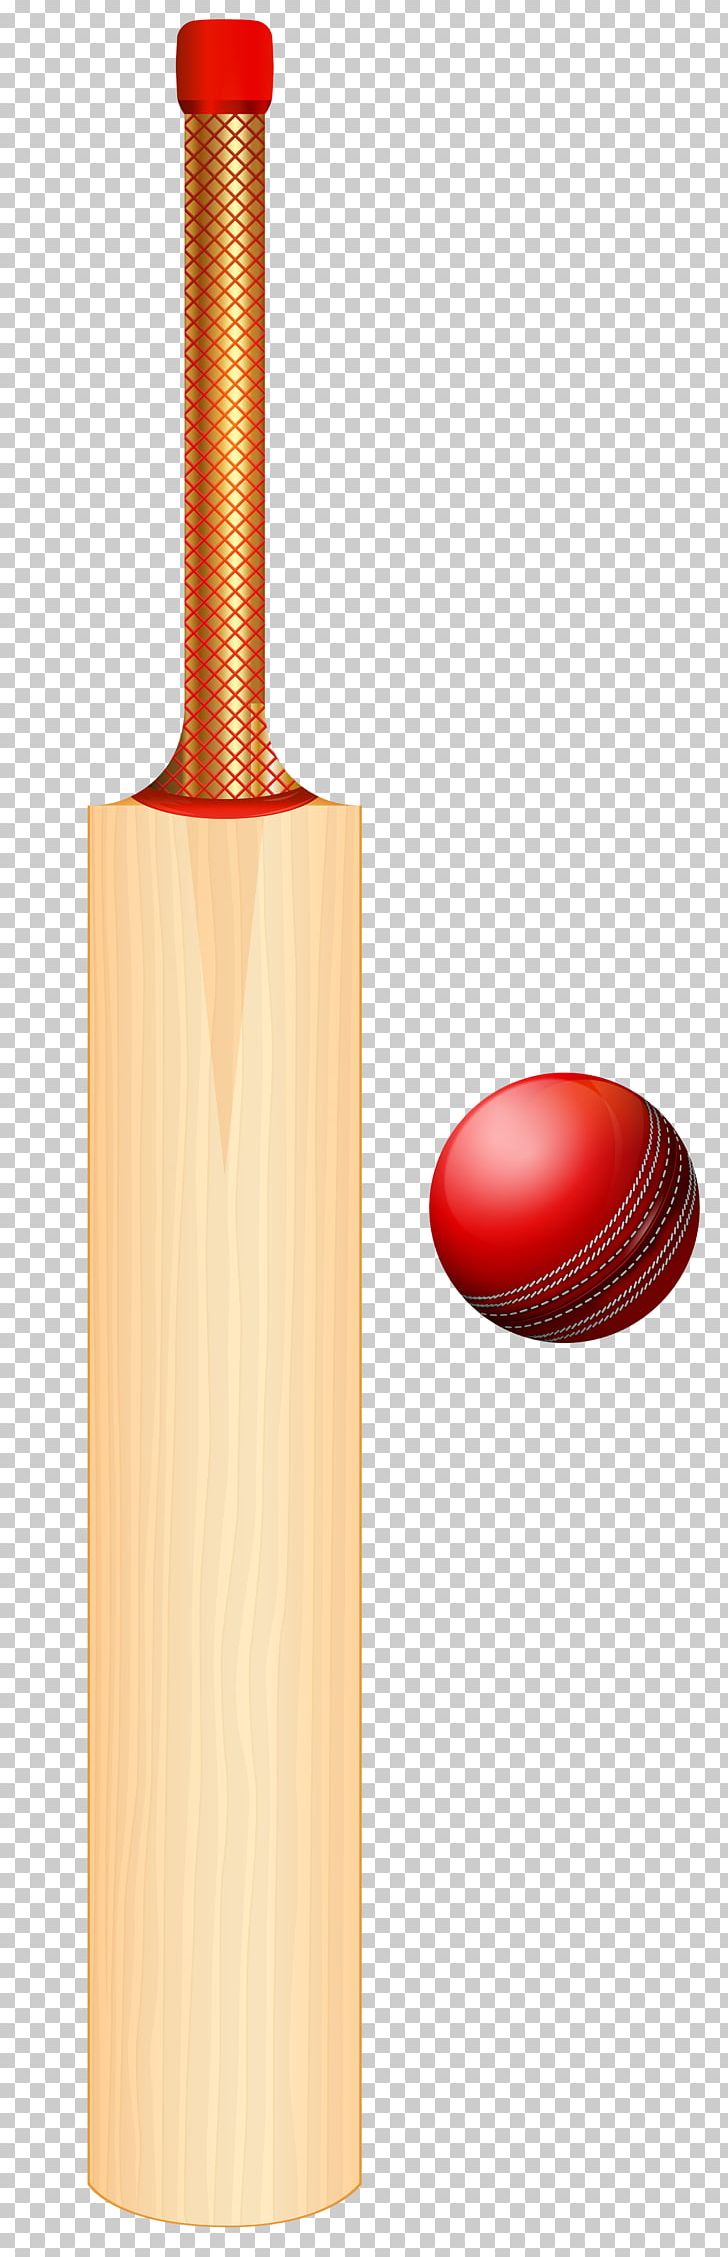 Cricket Bats Batting Cricket Balls PNG, Clipart, Ball, Balls, Baseball Bats, Batandball Games, Bats Free PNG Download